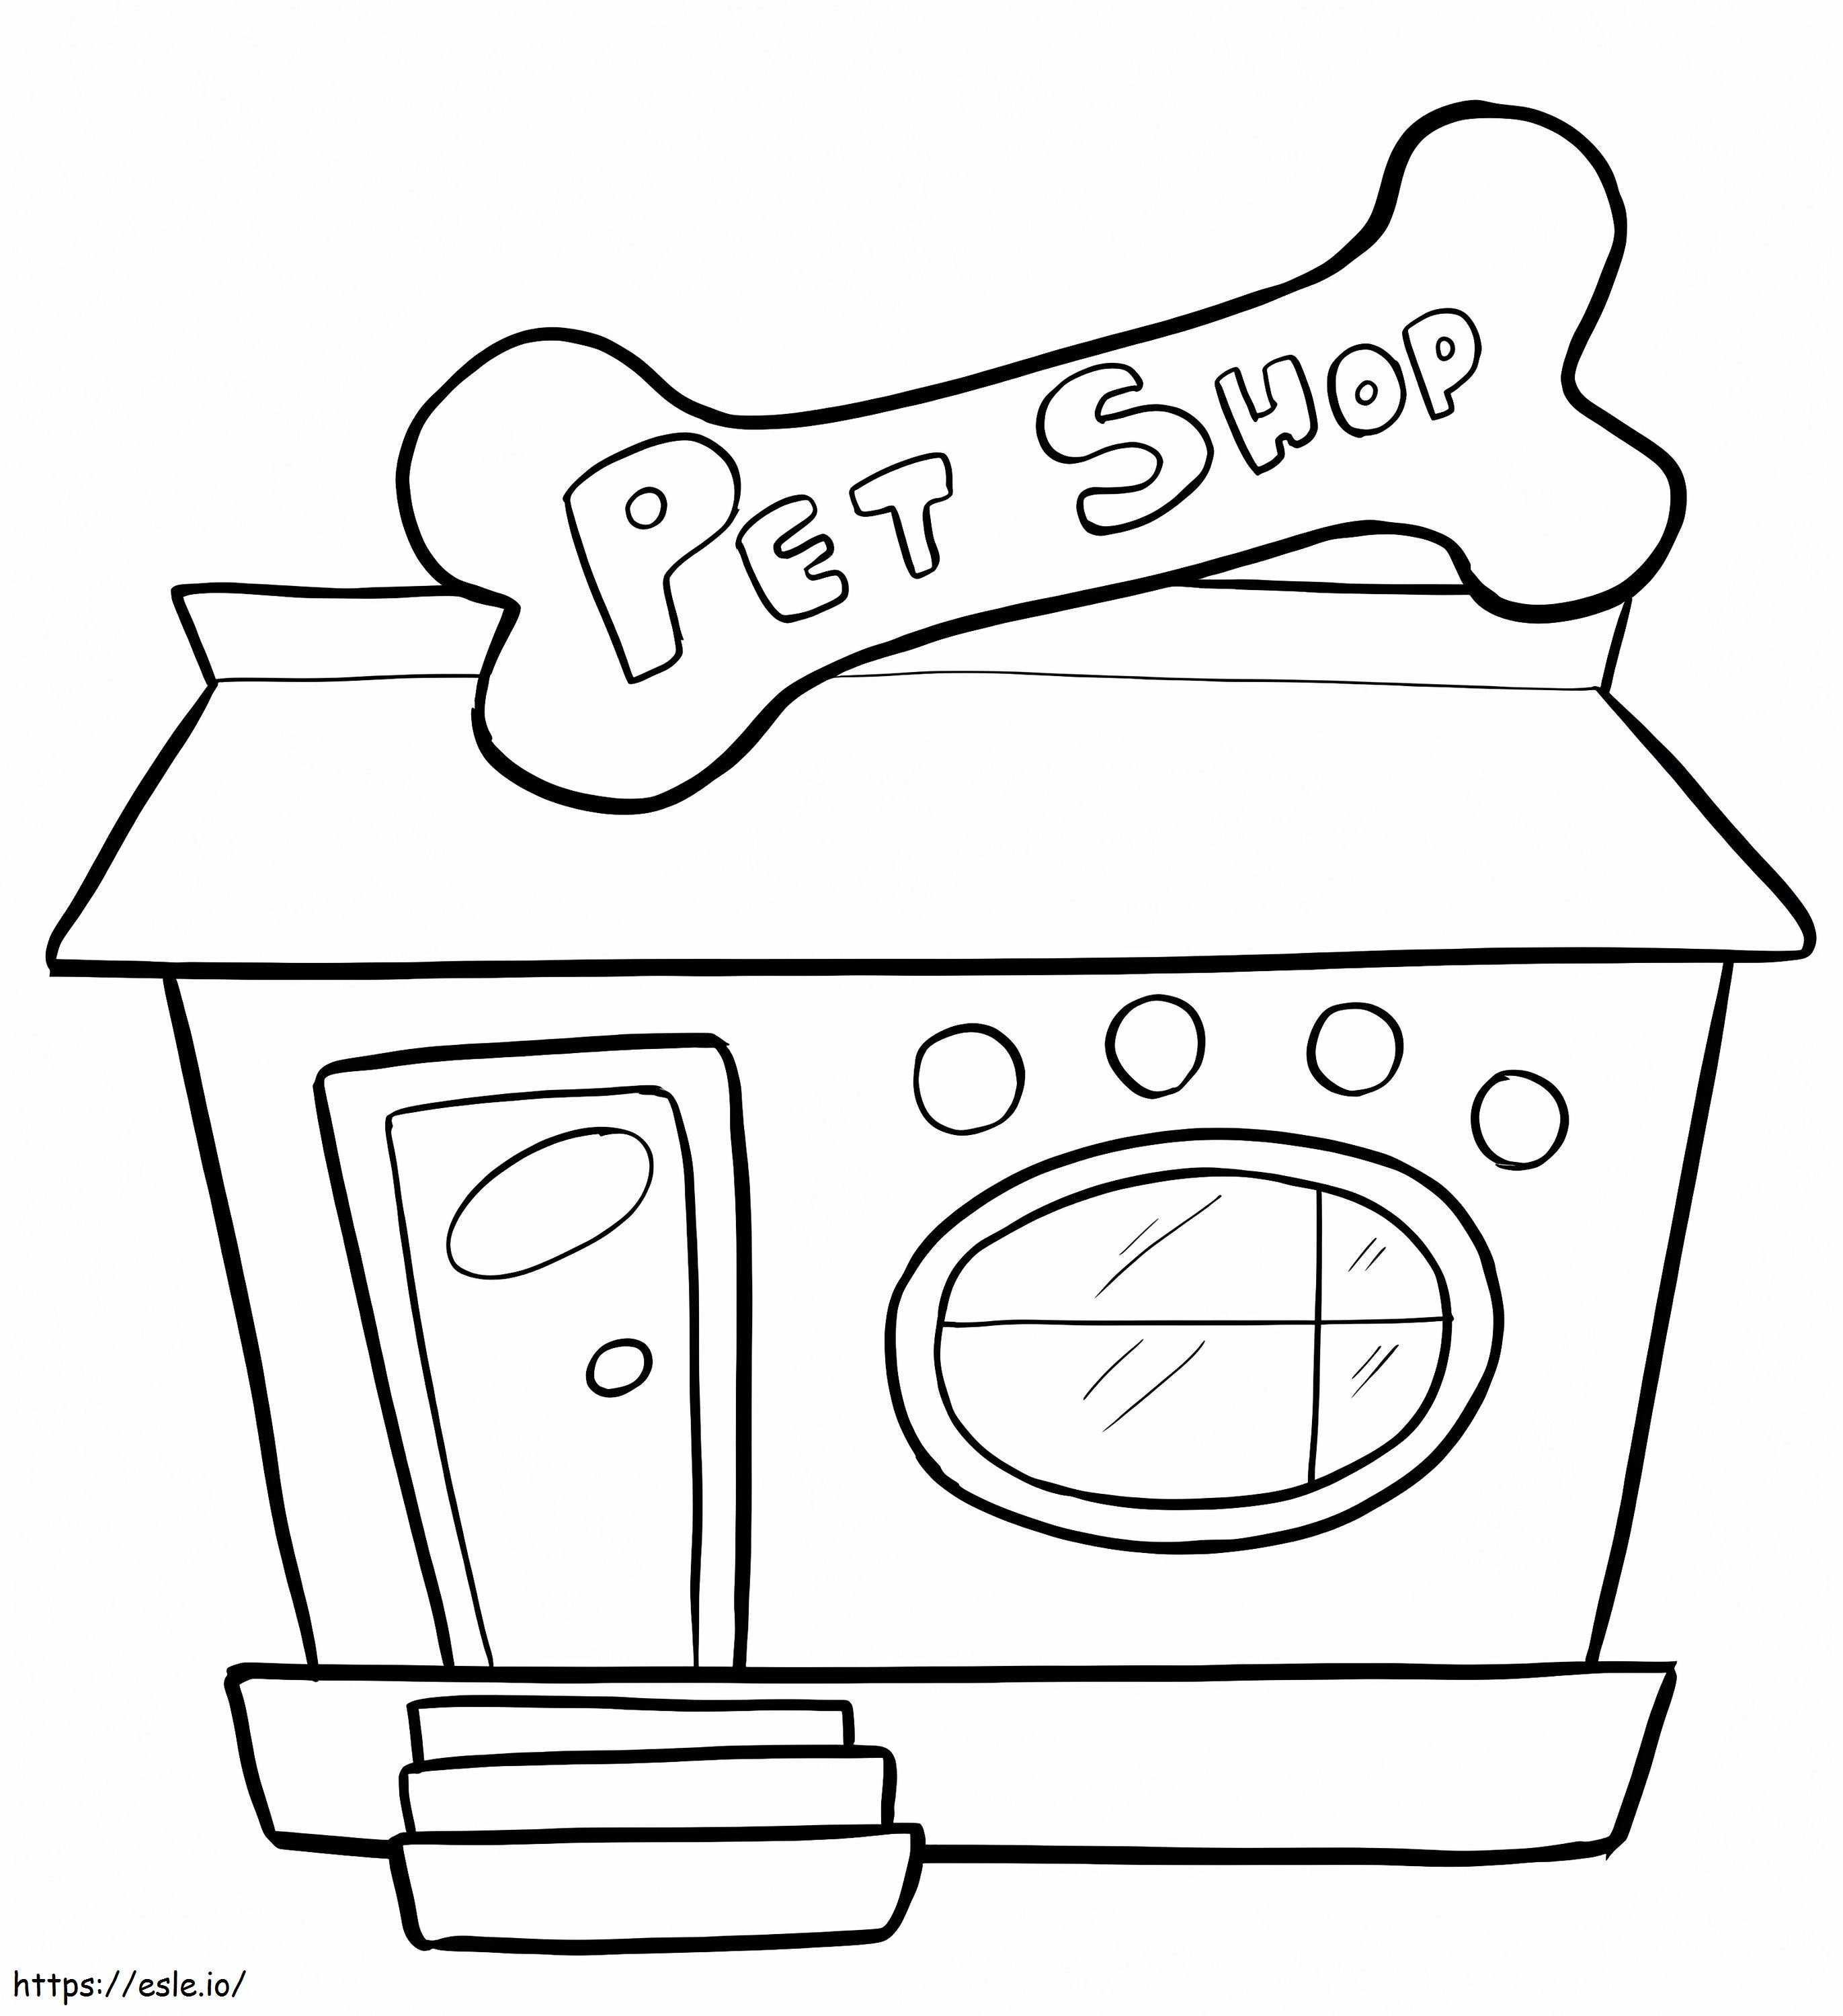 Pet Shop To Color coloring page